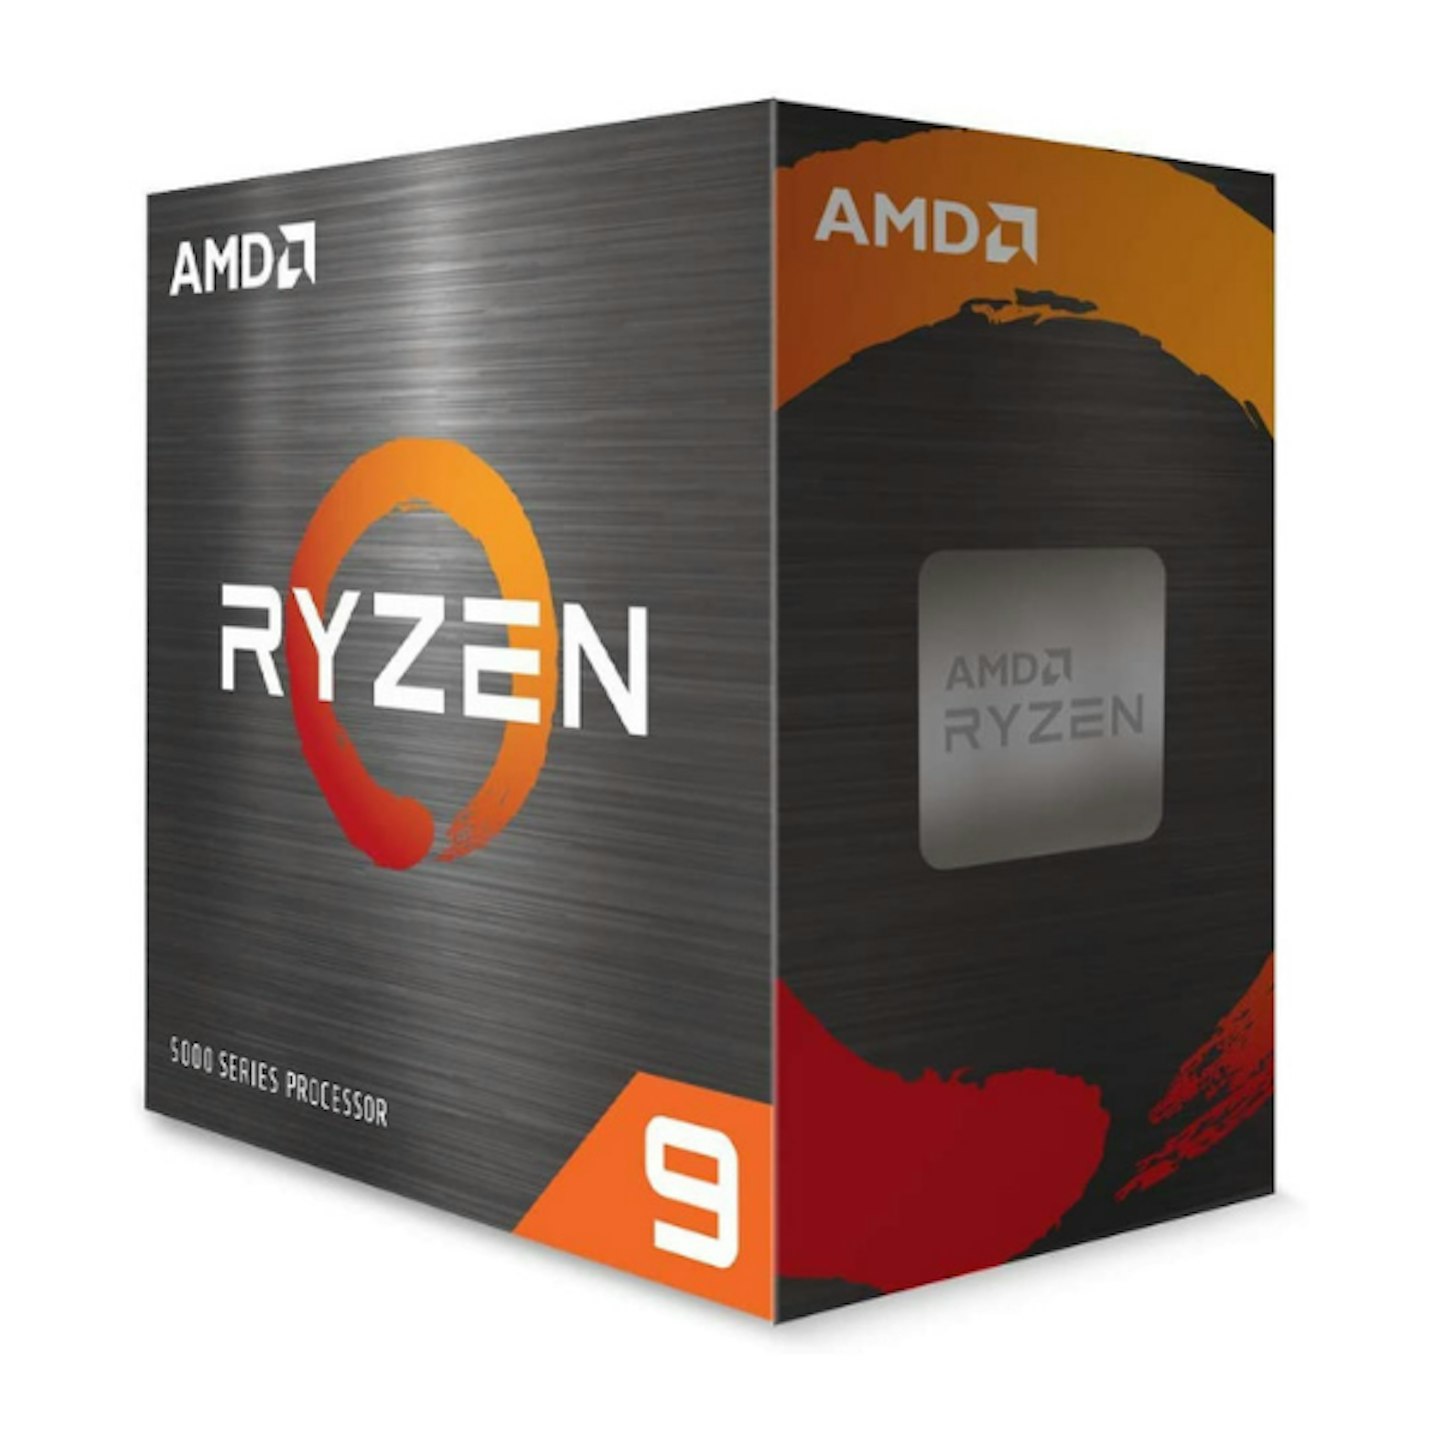 AMD Ryzen 9 5900X CPU